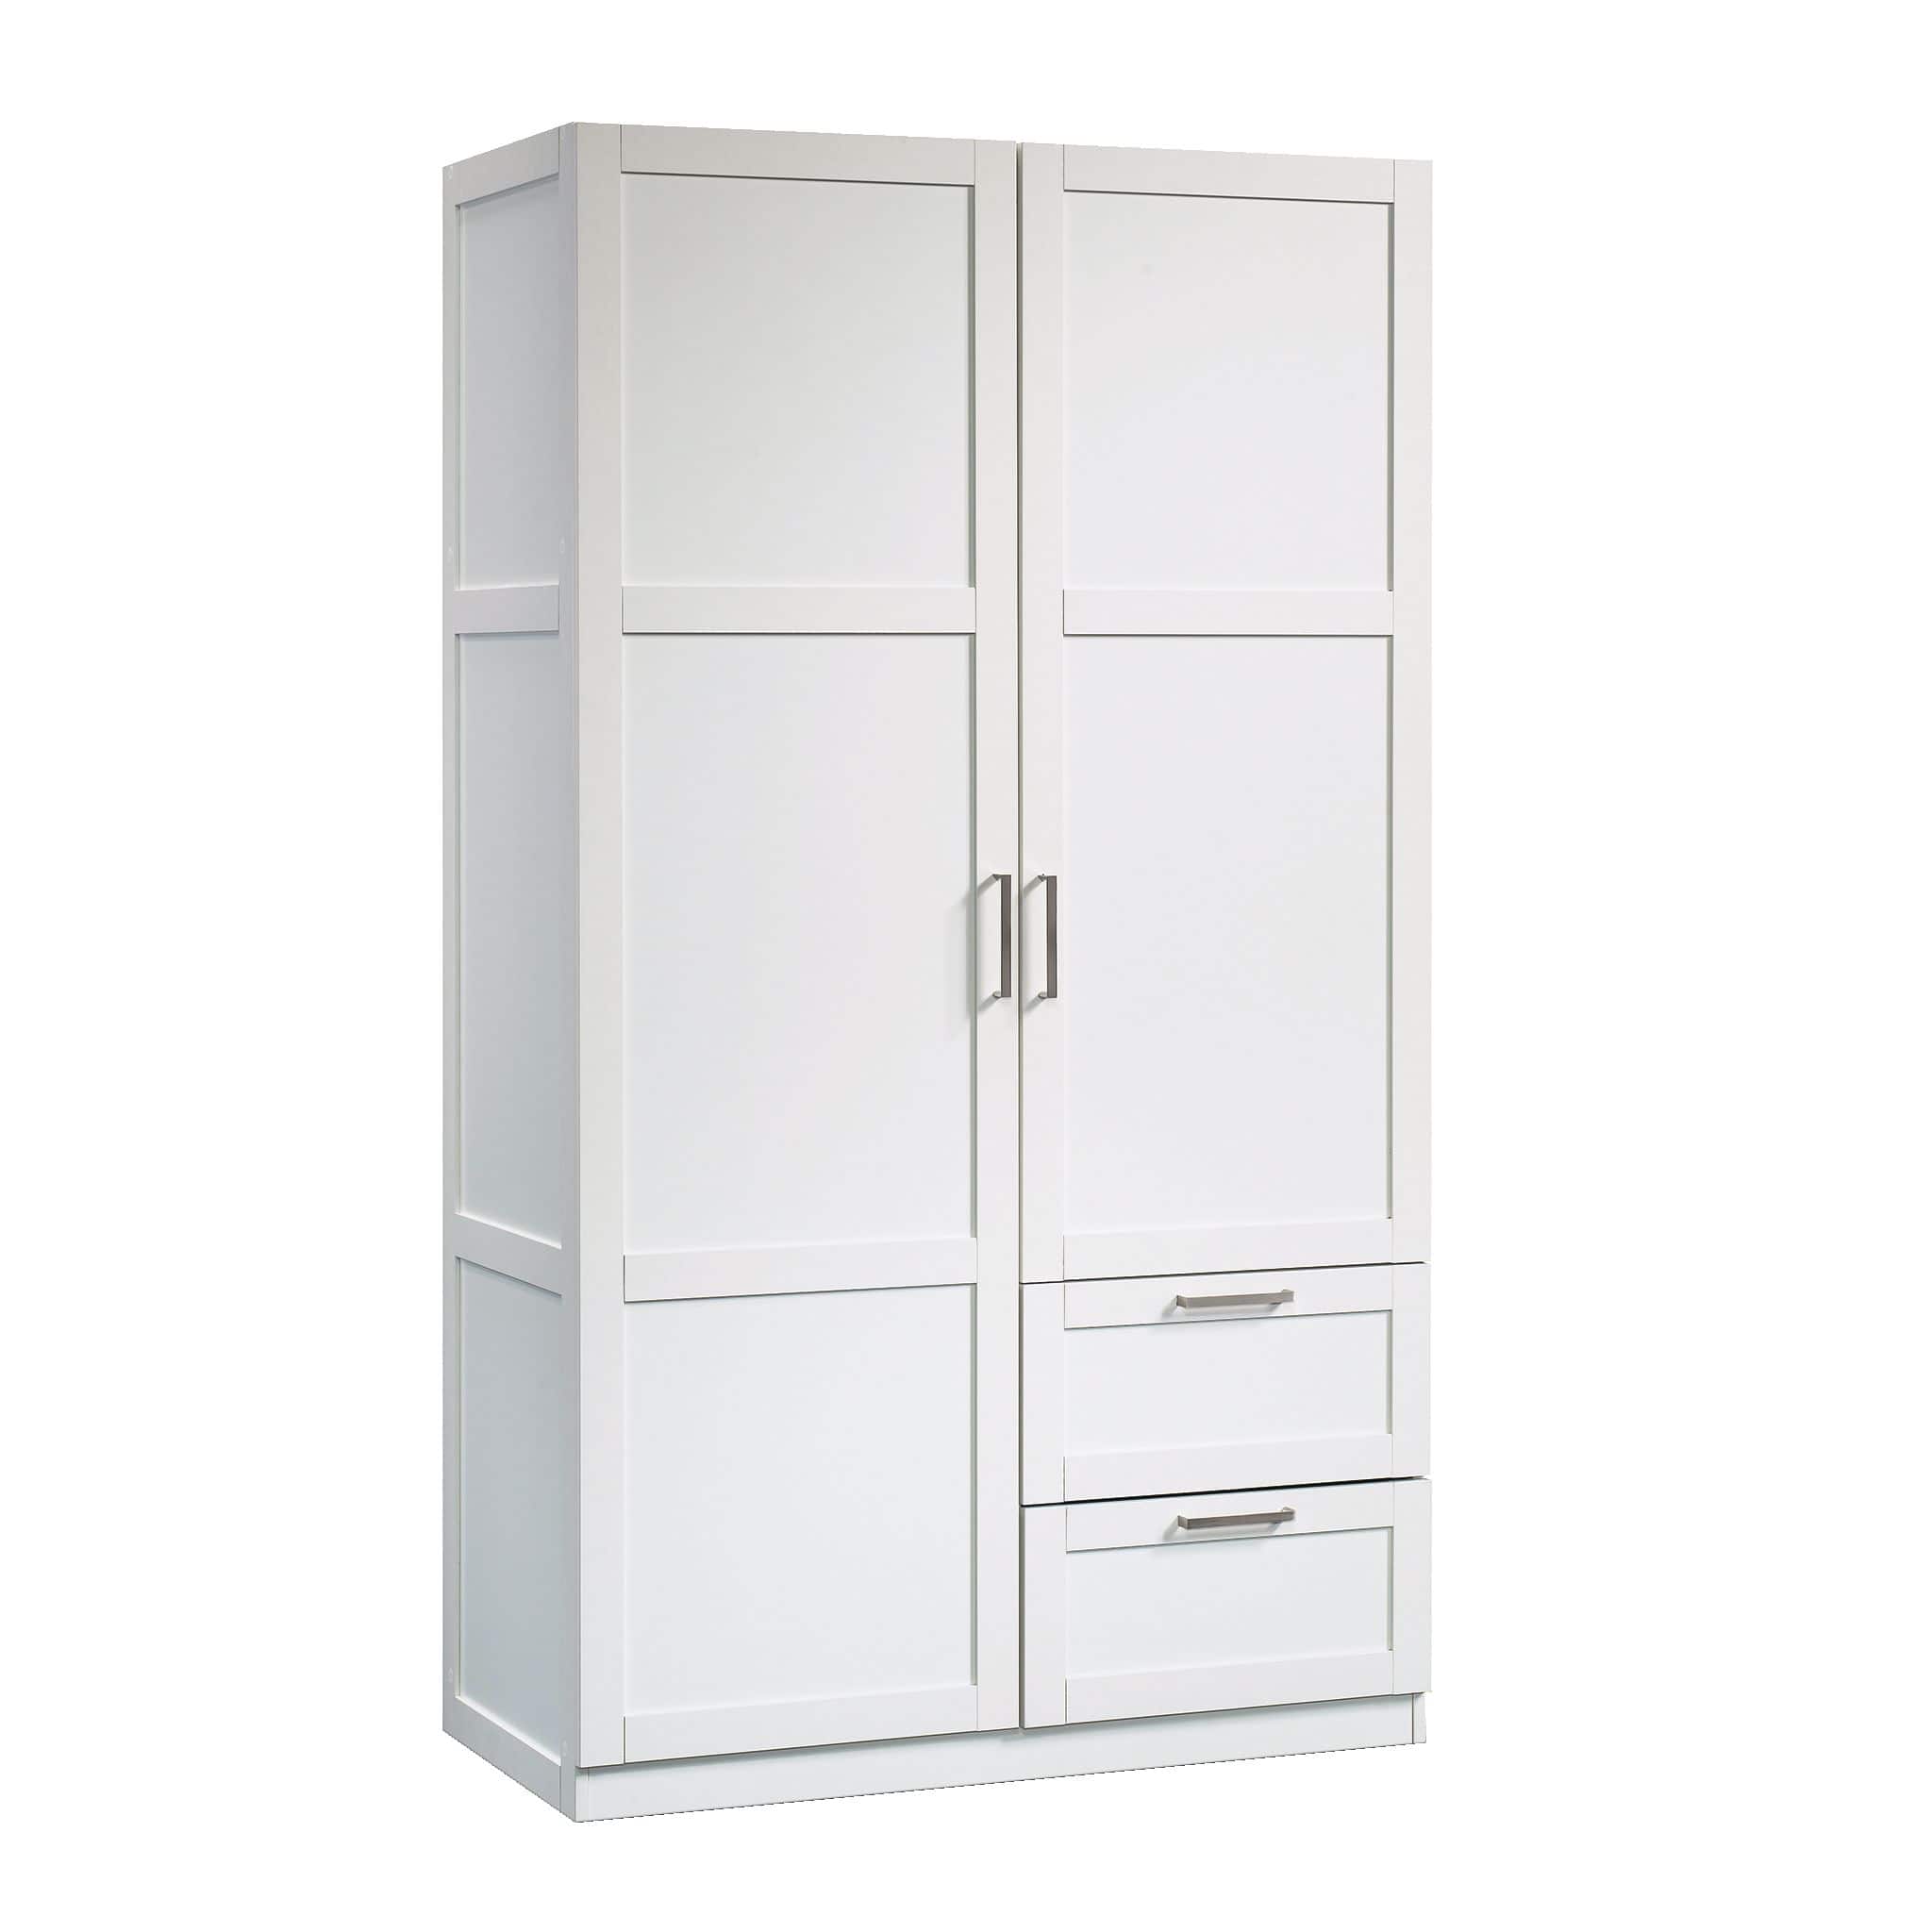 2-Door 2-Drawer Wardrobe/Armoire Clothes Storage Cabinet With Hanger Rod, White Sauder